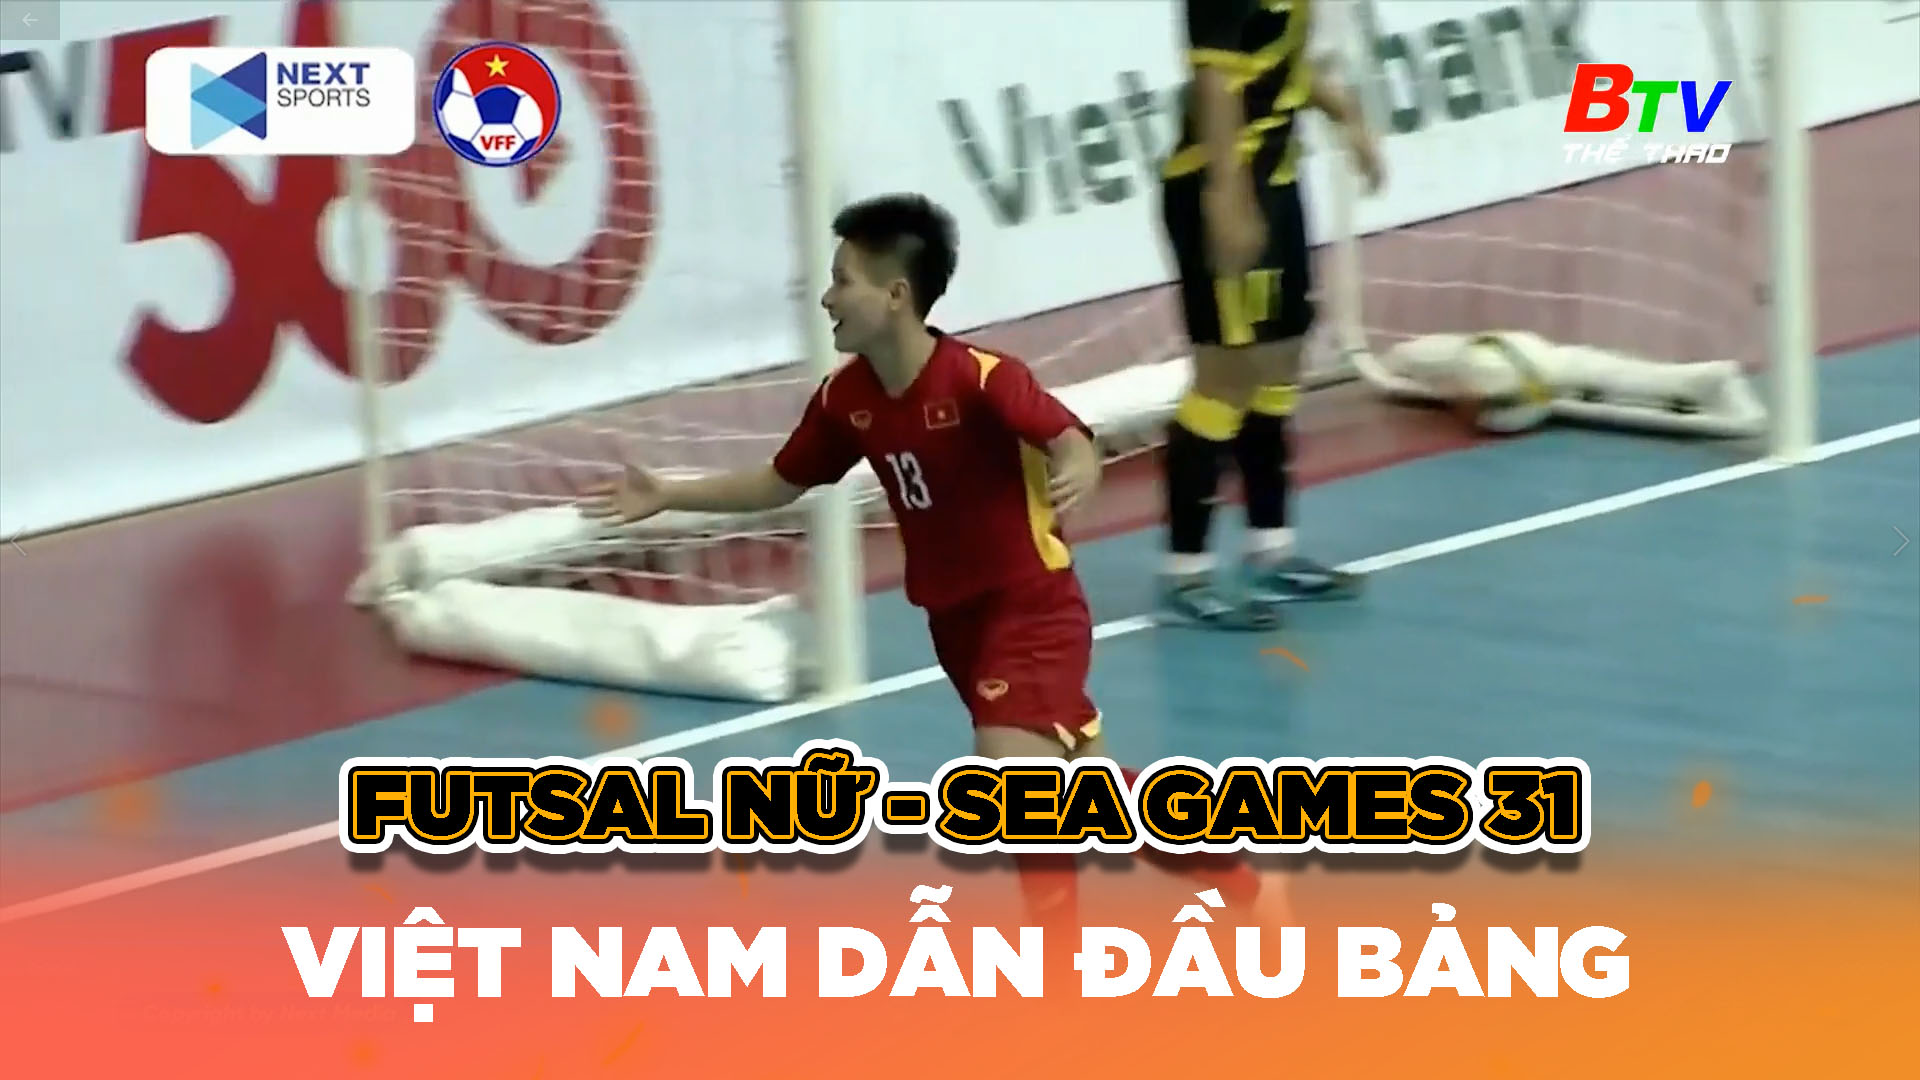 Việt Nam dẫn đầu bảng xếp hạng Futsal nữ SEA Games - 31